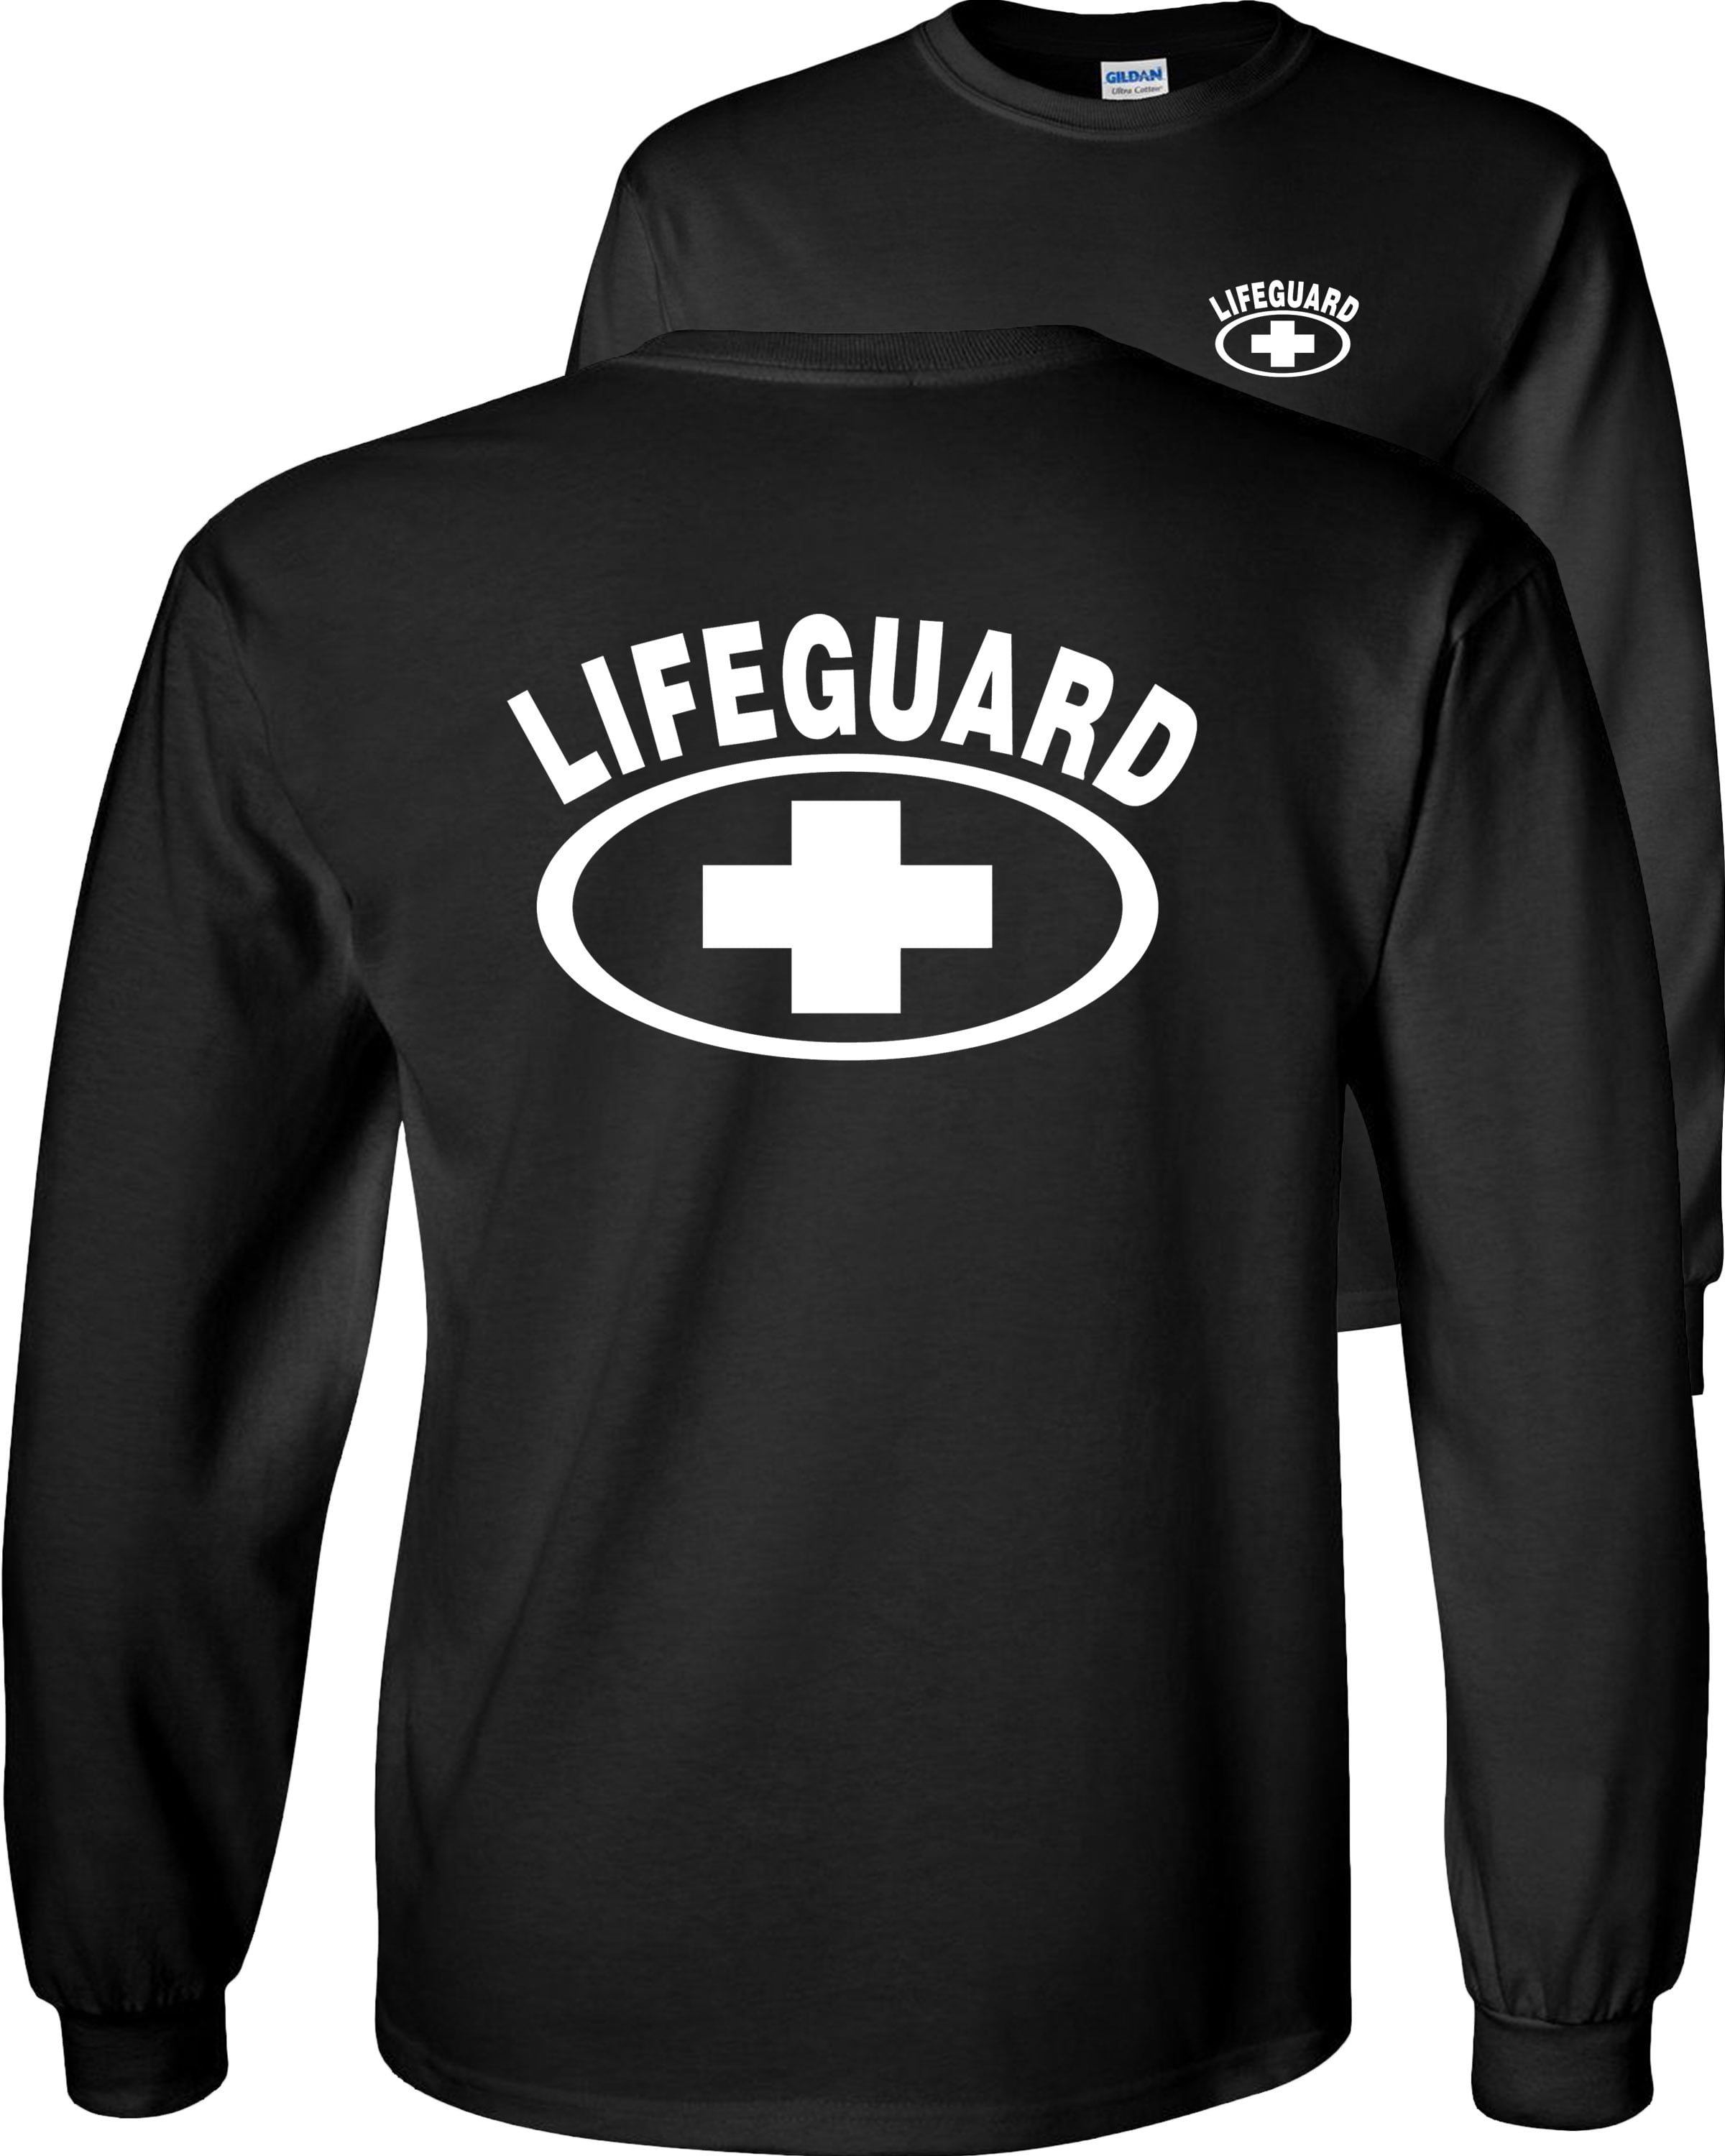 Fair Game Lifeguard Long Sleeve Shirt, lifeguarding cross Graphic Tee F ...